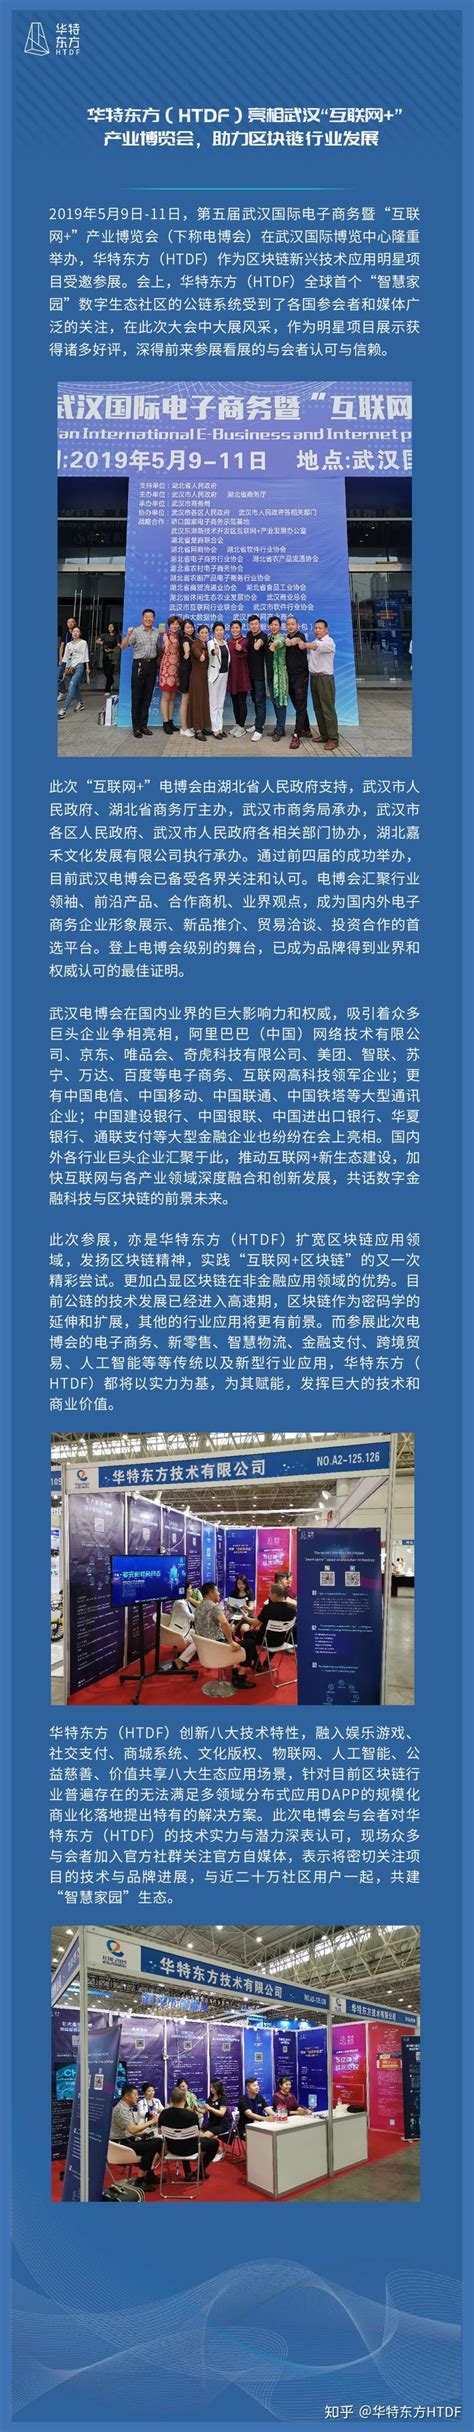 第五届武汉国际电子商务暨“互联网+”产业博览会盛大开幕 - 武汉建筑协会